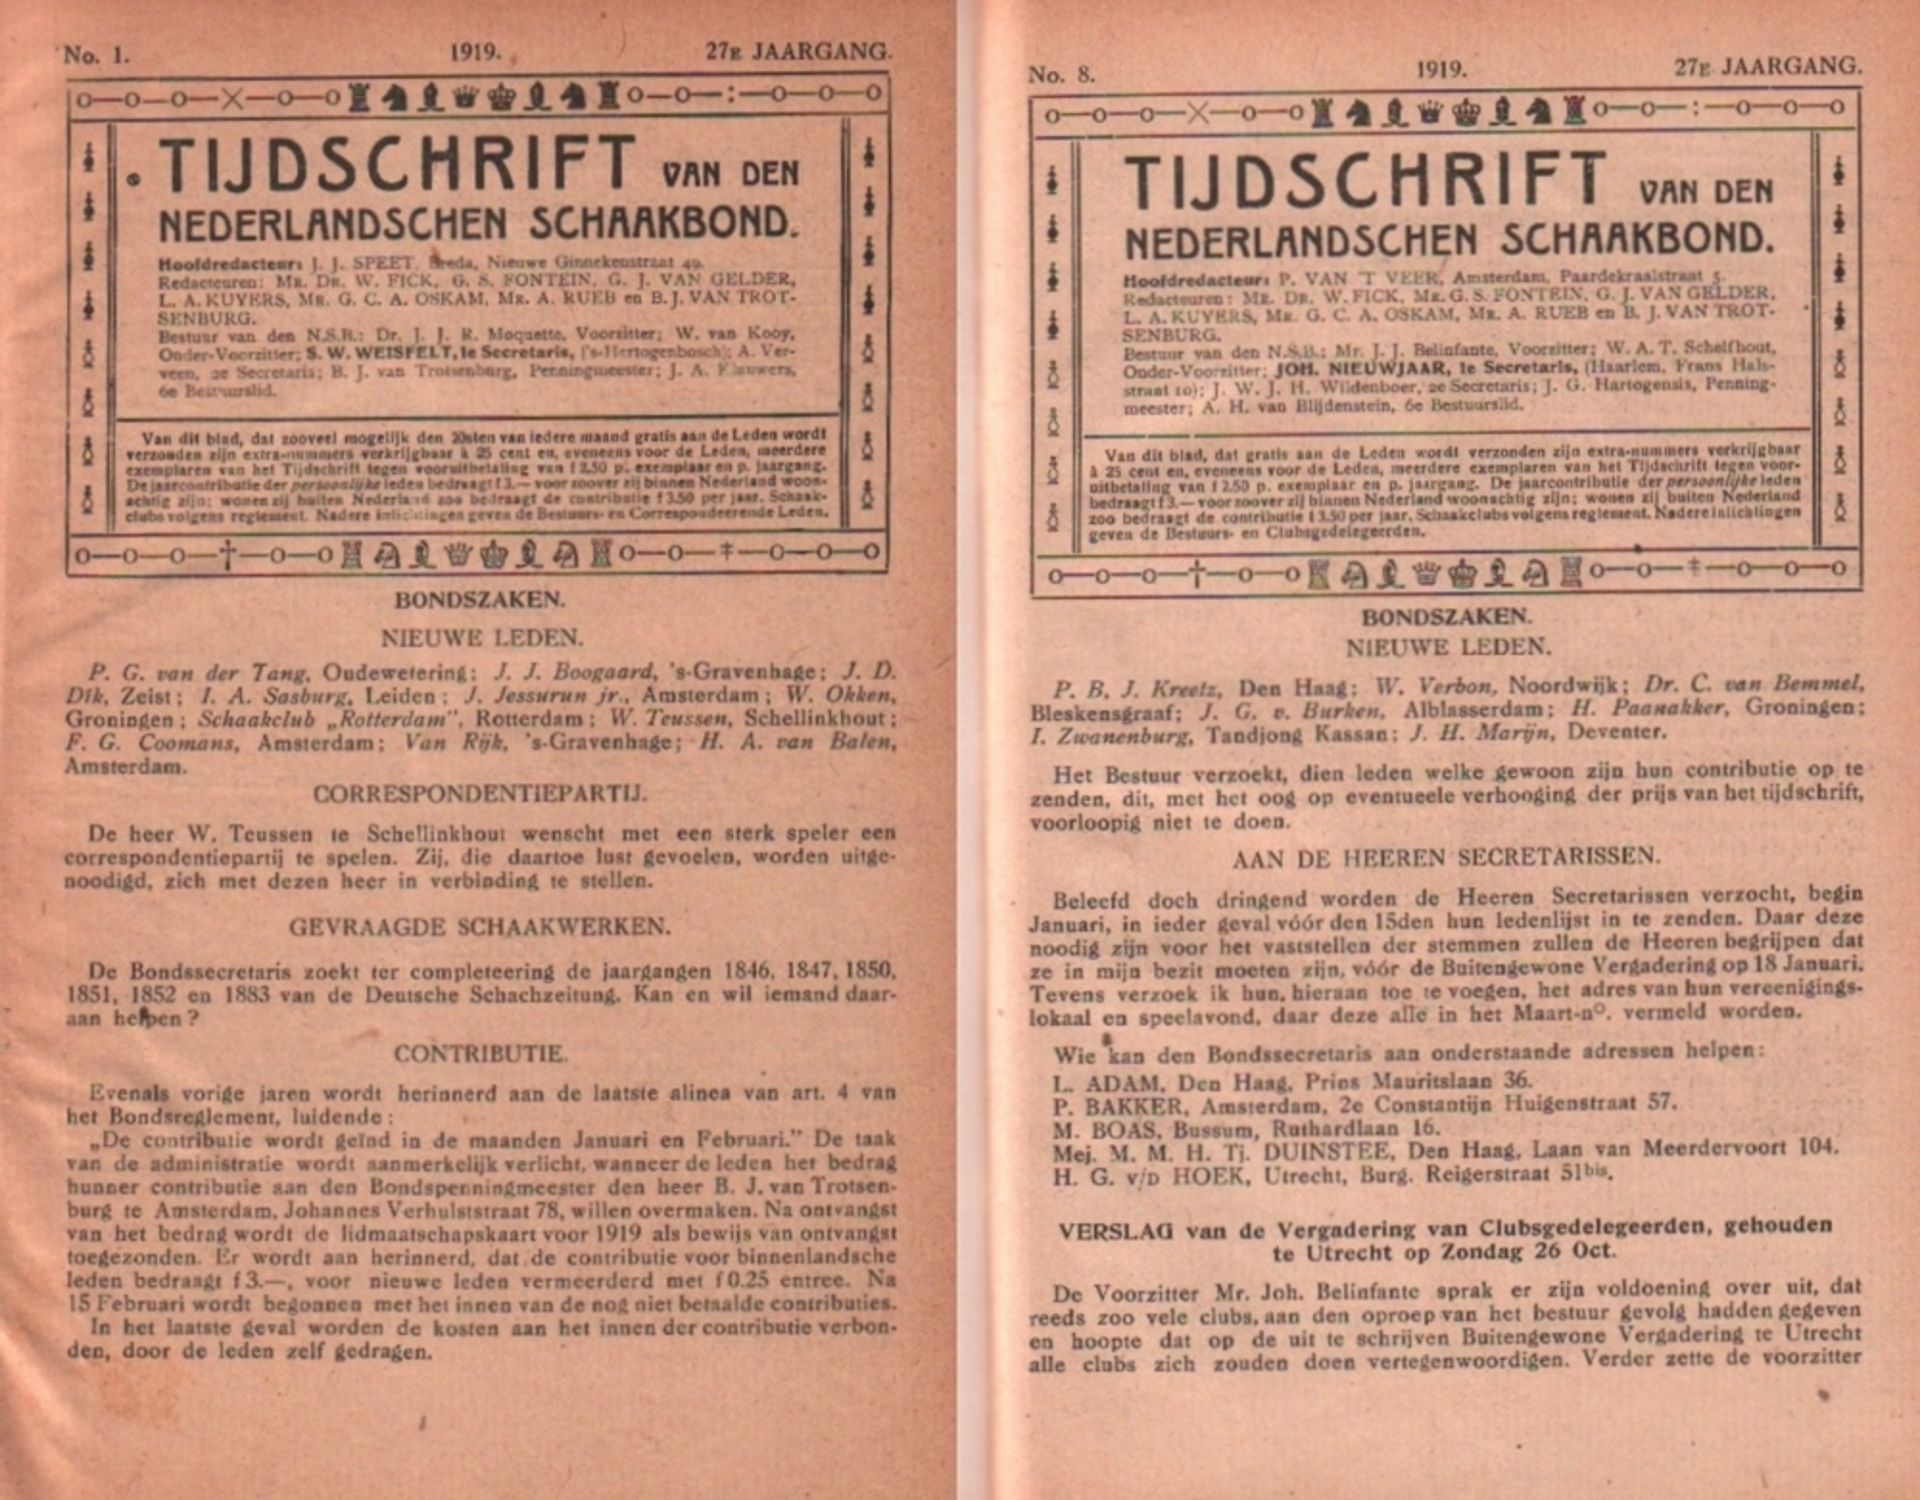 Tijdschrift van den Nederlandschen Schaakbond. Hoofdredacteur: J. J. Speet. 27. Jahrgang 1919, No. 1